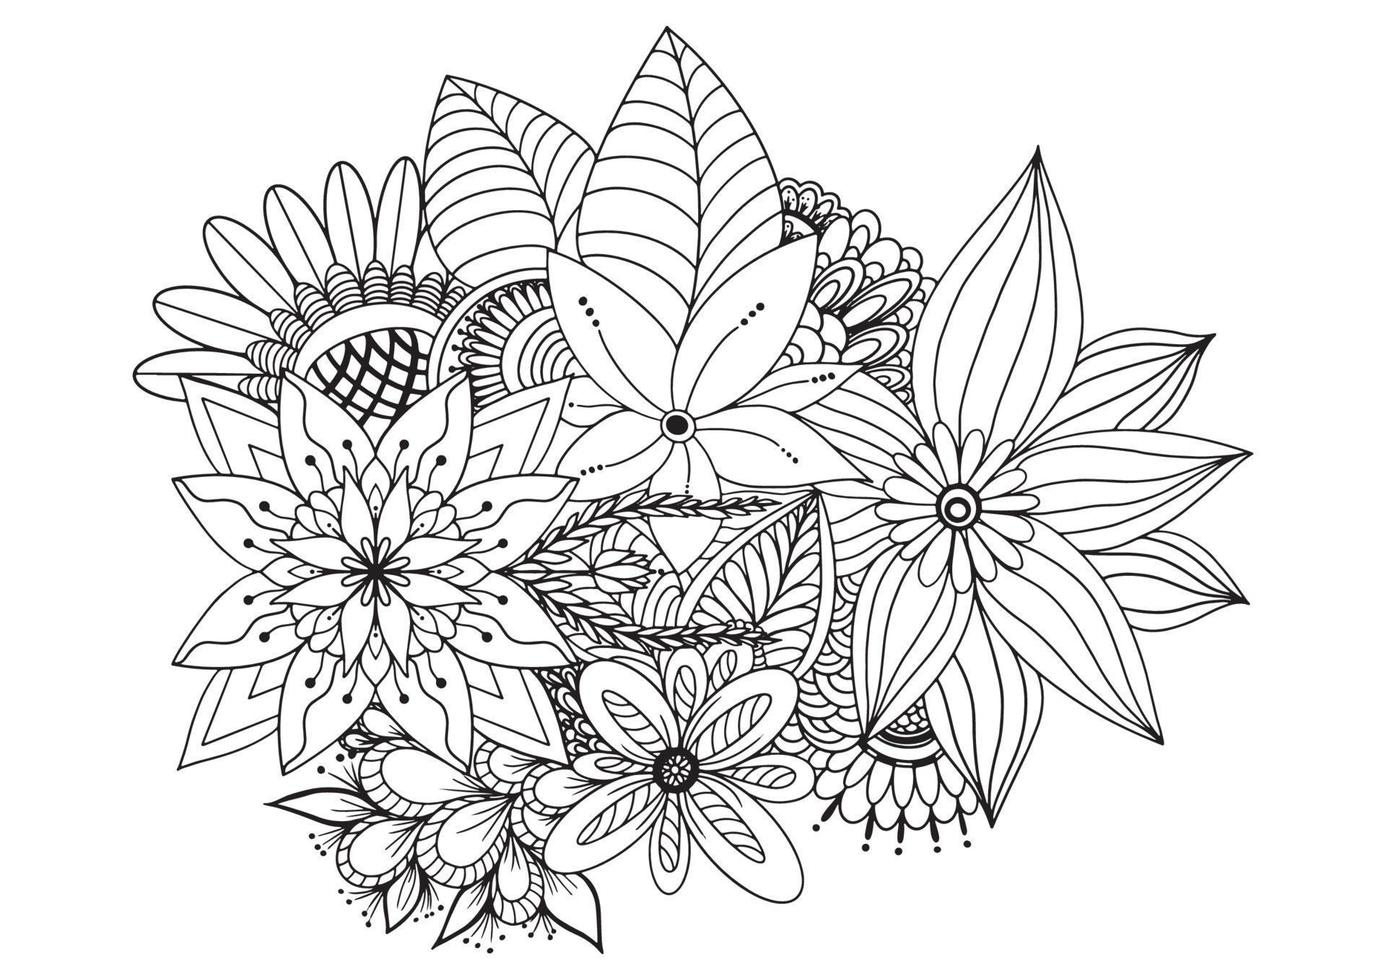 borde floral sin costuras de flores silvestres y hierbas sobre un fondo blanco. vector ilustrador dibujado a mano.